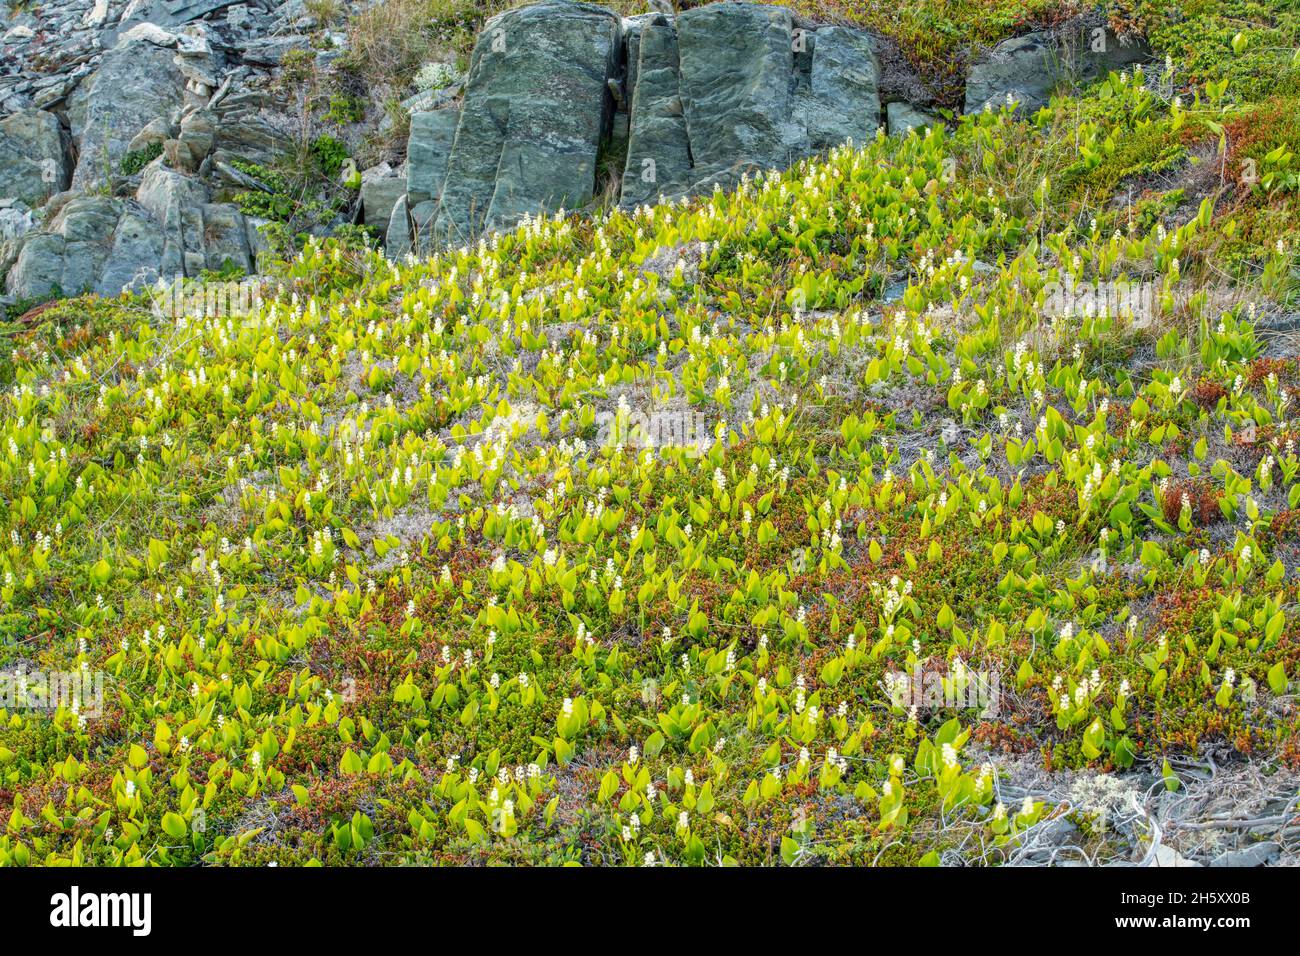 Piedras de Brimstone Head y la vegetación- floreciente Canada Mayflower (Maianthemum canadense), Fogo, Newfoundland y Labrador NL, Canadá Foto de stock